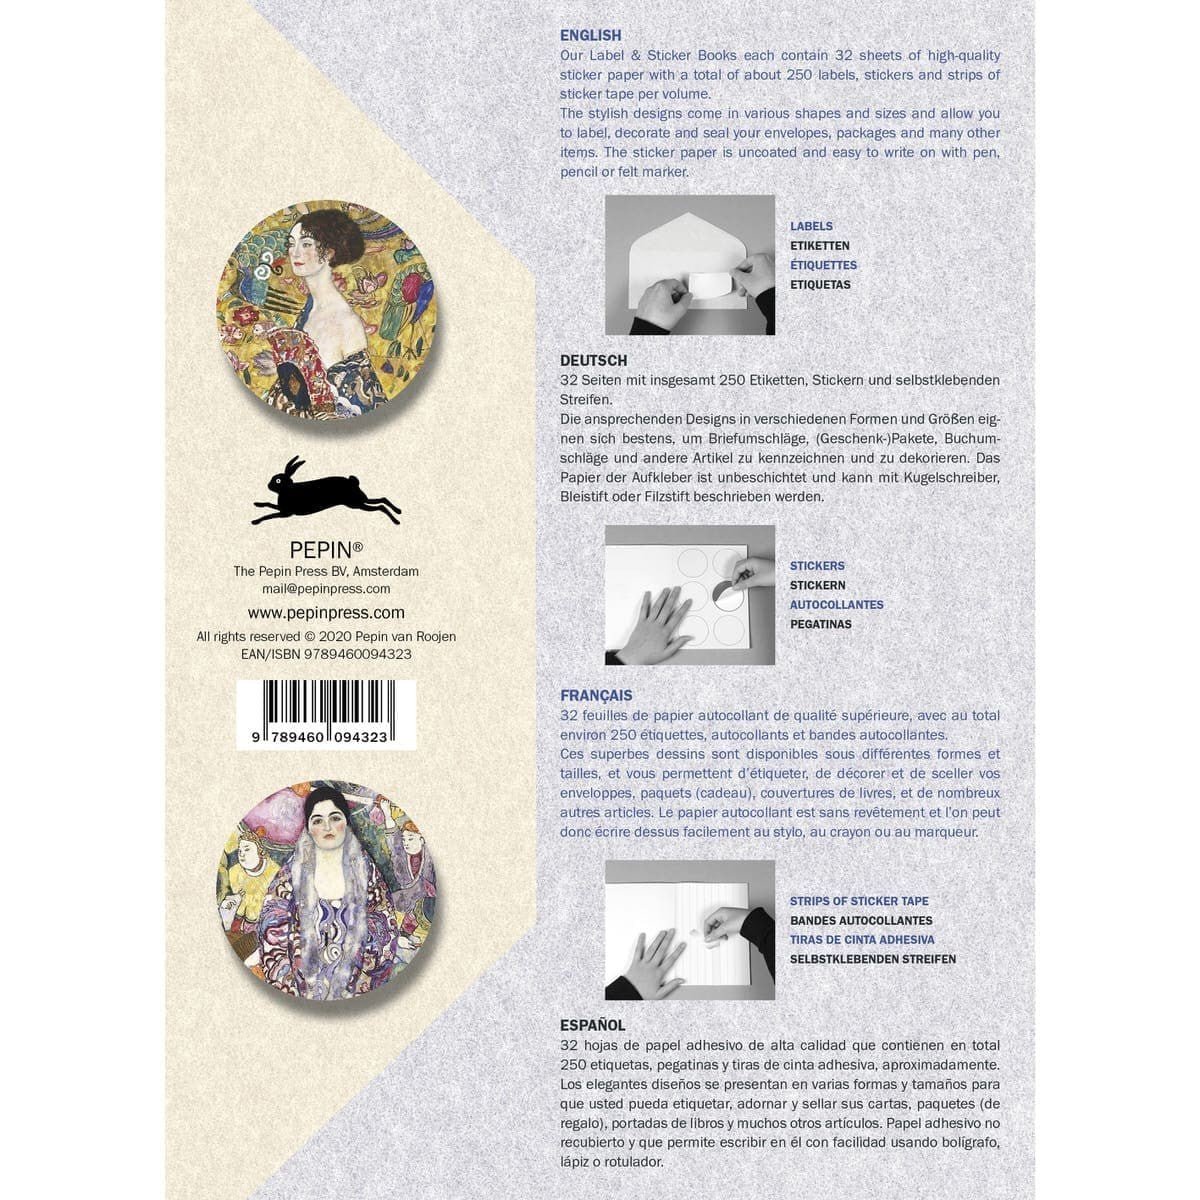 Pepin Labels, stickers & tape Sticker book - Gustav Klimt - Pepin Press - Tidformera